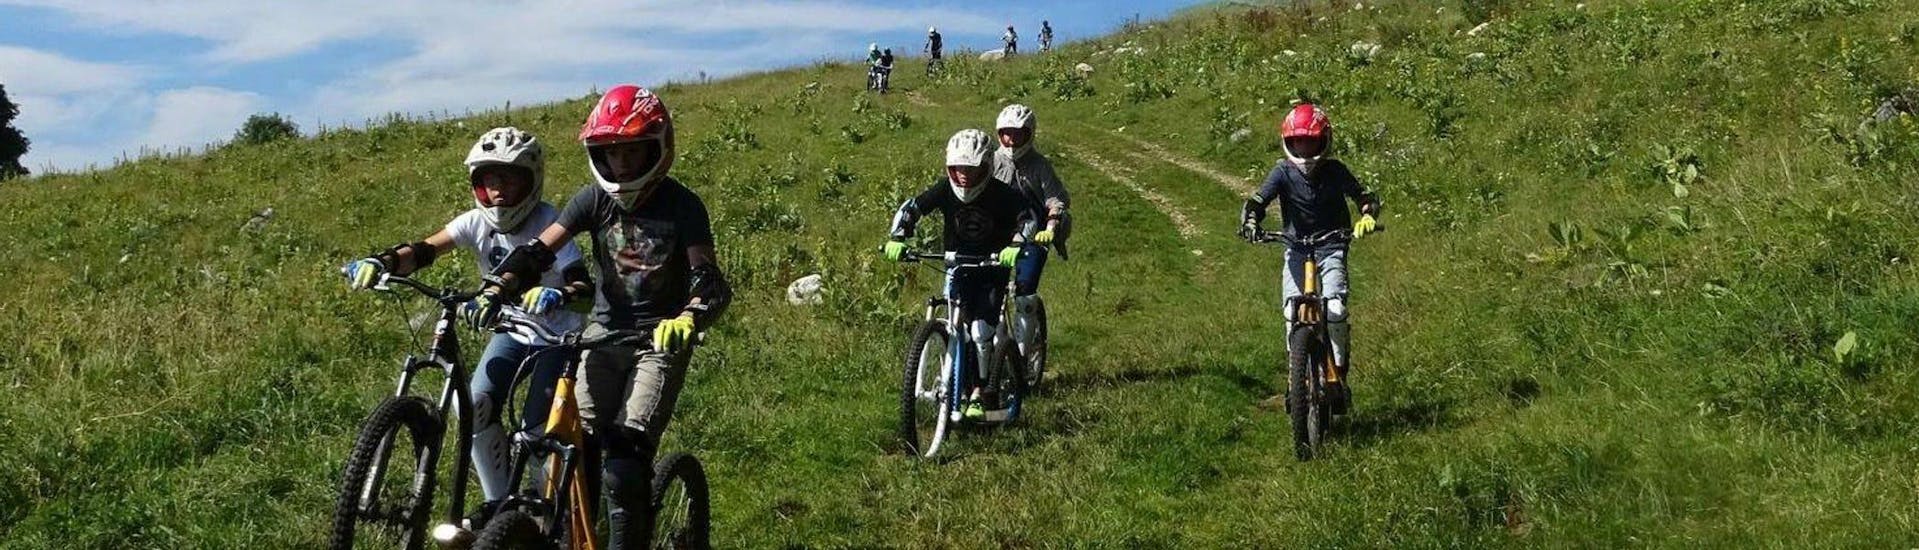 Mountainbike-Tour - Parc Jura vaudois.